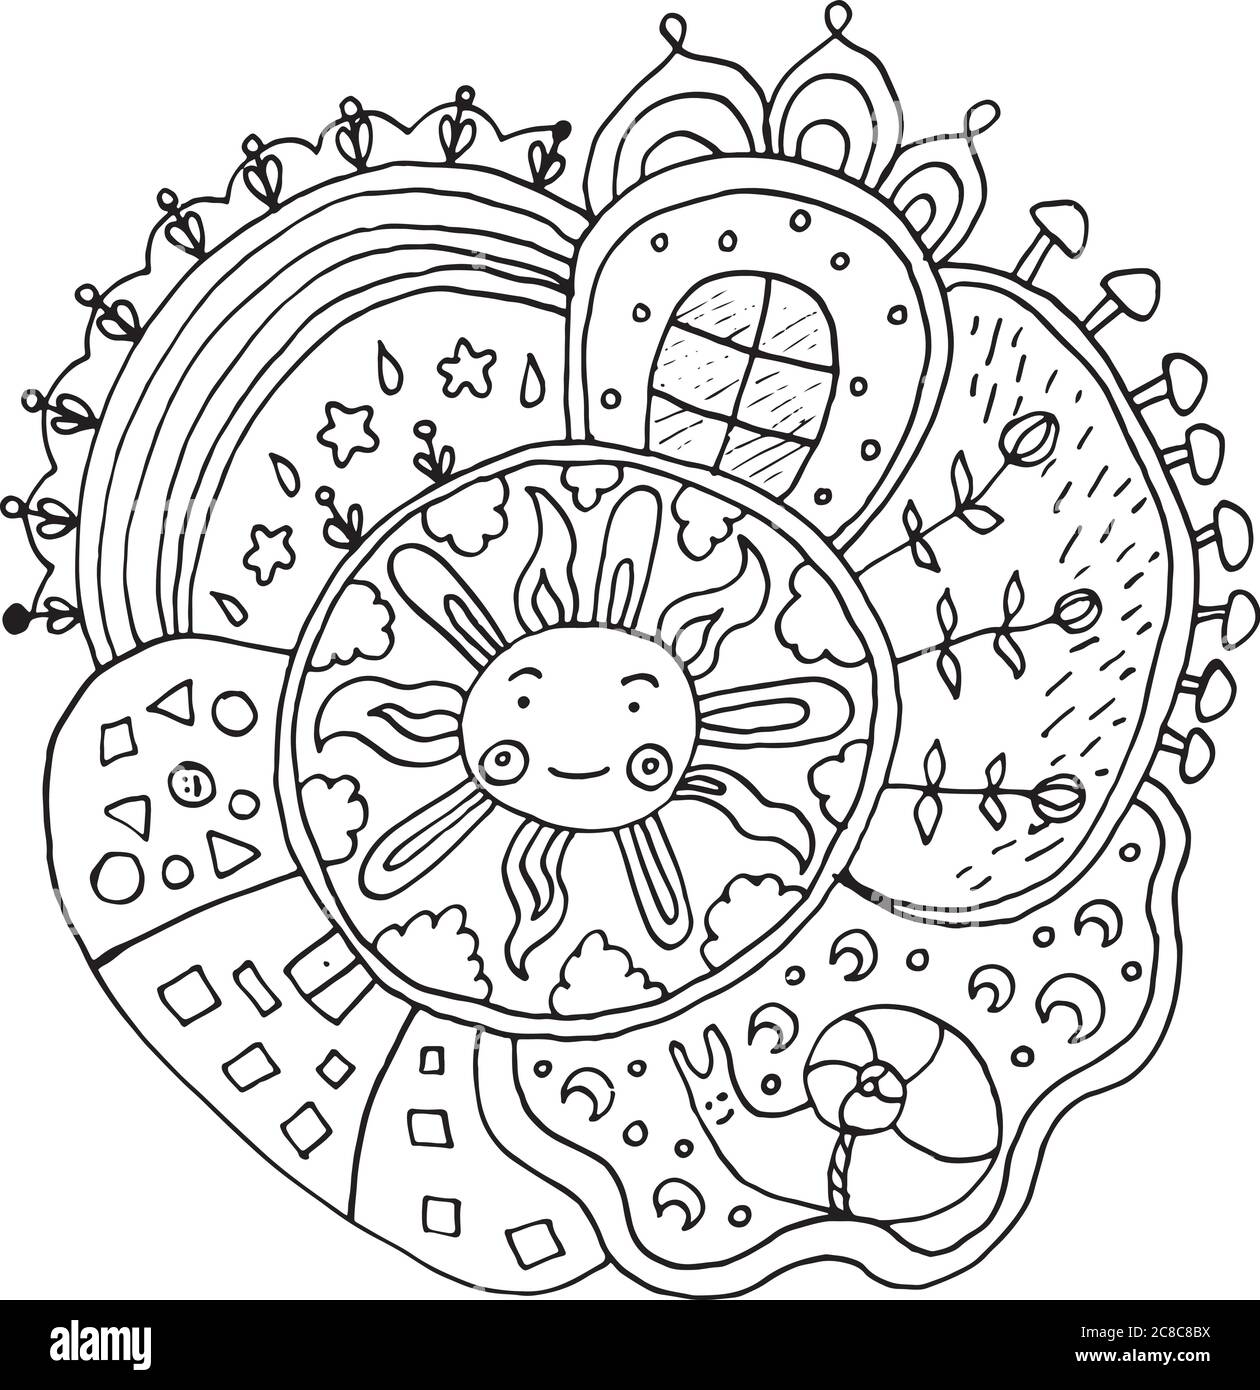 Kind gezeichnet Mandala mit Sonne und Natur Elemente - Doodle Färbung Seite  für Erwachsene und Kinder. Vektorgrafik Stock-Vektorgrafik - Alamy